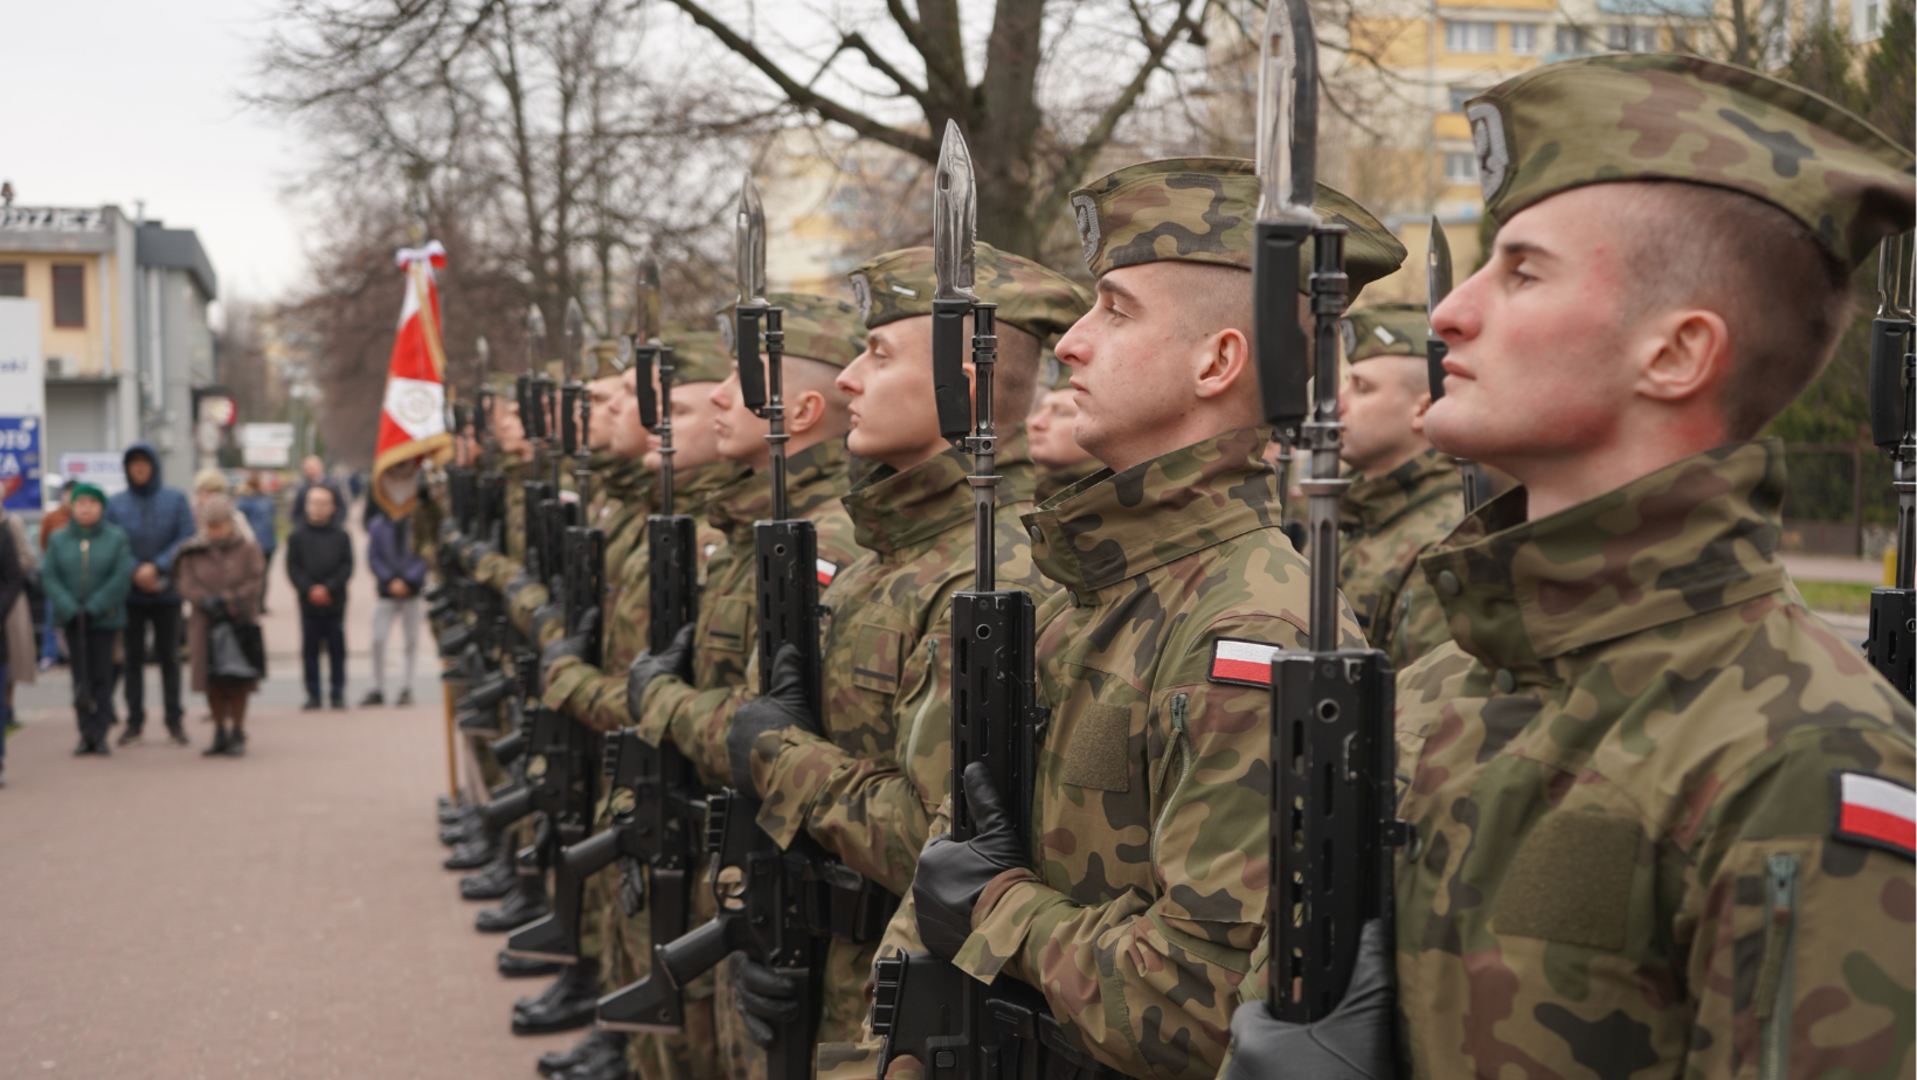 Żołnierze z karabinami podczas uroczystości patriotycznej